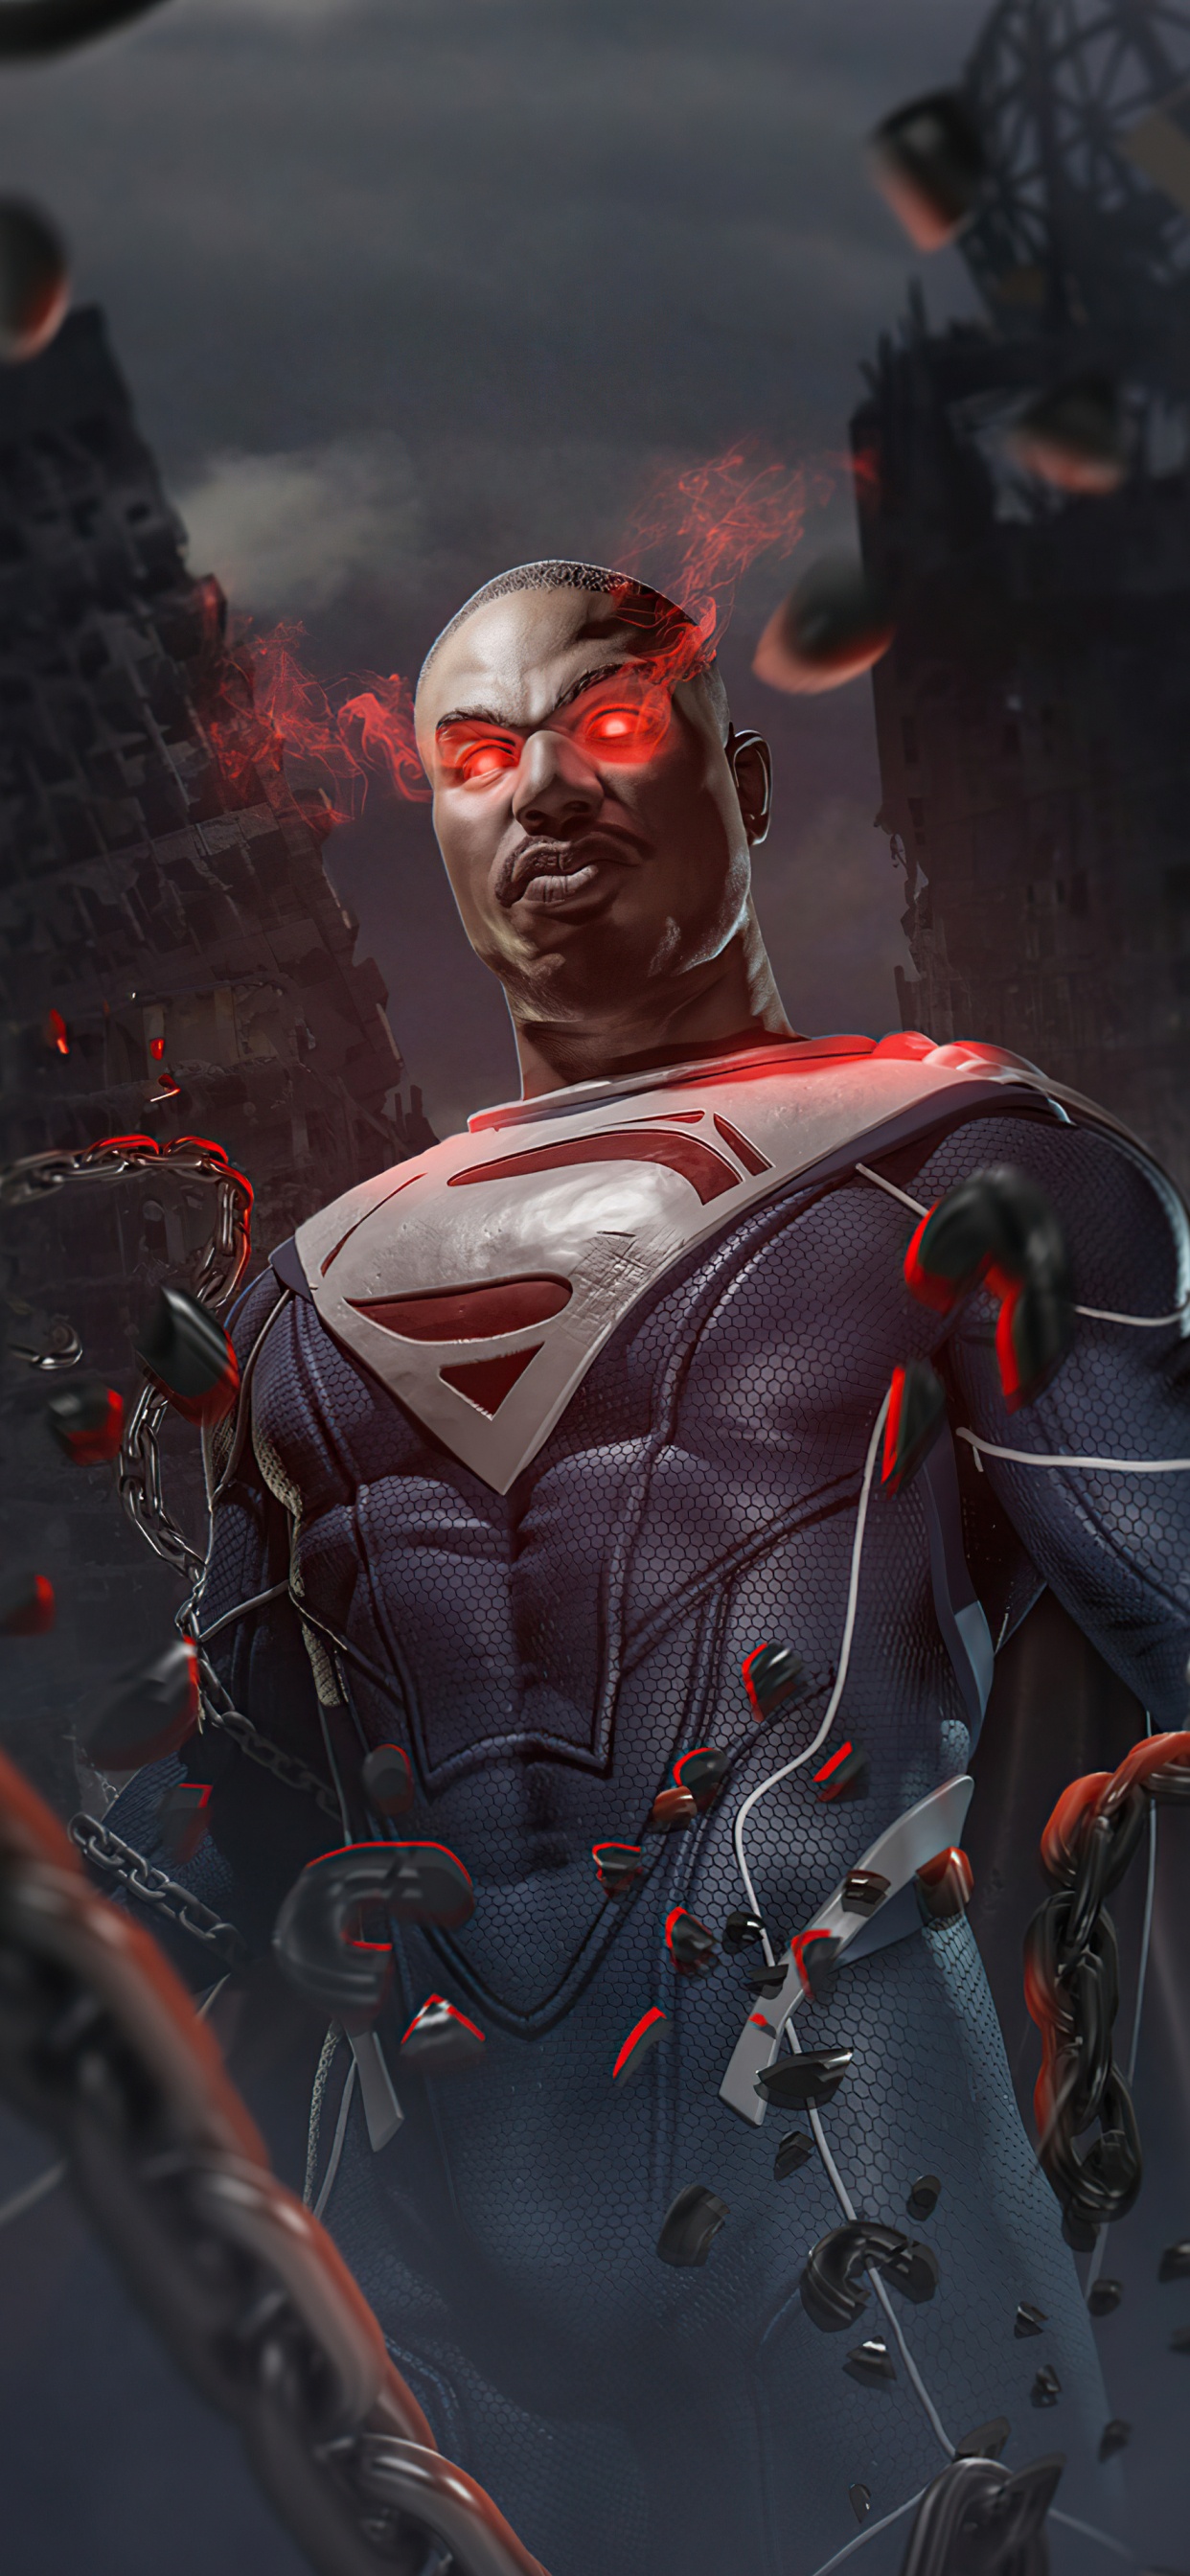 迈克尔 b 乔丹超人, 萨德将军, 不公2, 超级英雄, 蝙蝠侠 壁纸 1242x2688 允许